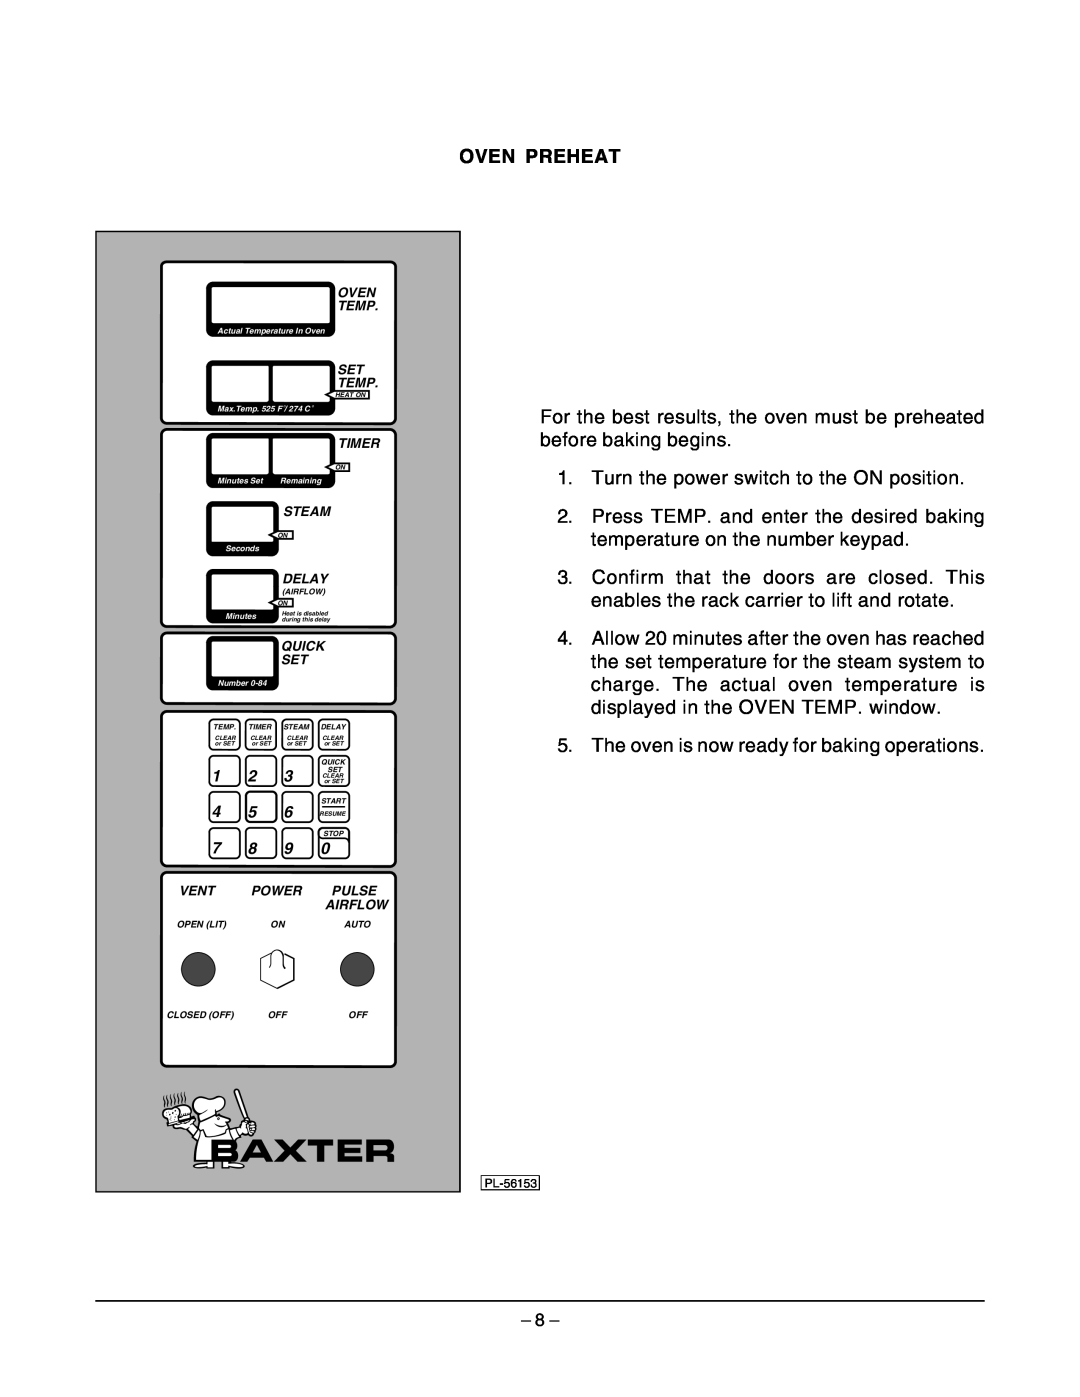 Hobart OV210 manual Oven Preheat 